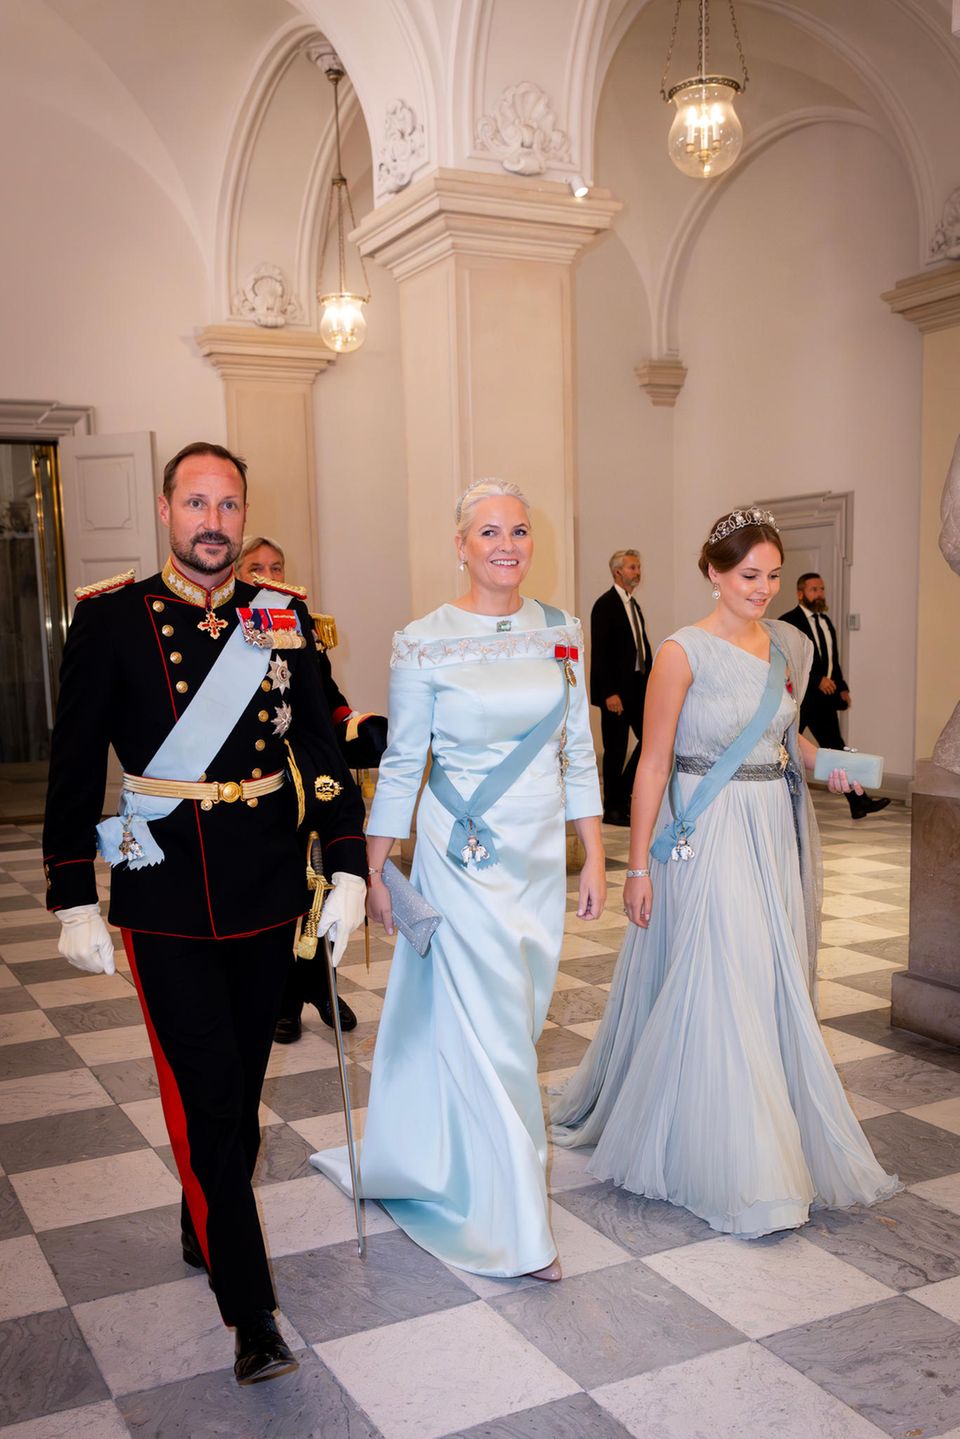 Da scheint sich aber jemand auf die große Party zu freuen. Mette-Marit von Norwegen schreitet mit Ehemann Haakon in den Festsaal auf Schloss Christiansborg und brilliert in einem Kleid von Peter Dundas und im pastellfarbenen Partnerlook mit Tochter Ingrid Alexandra.